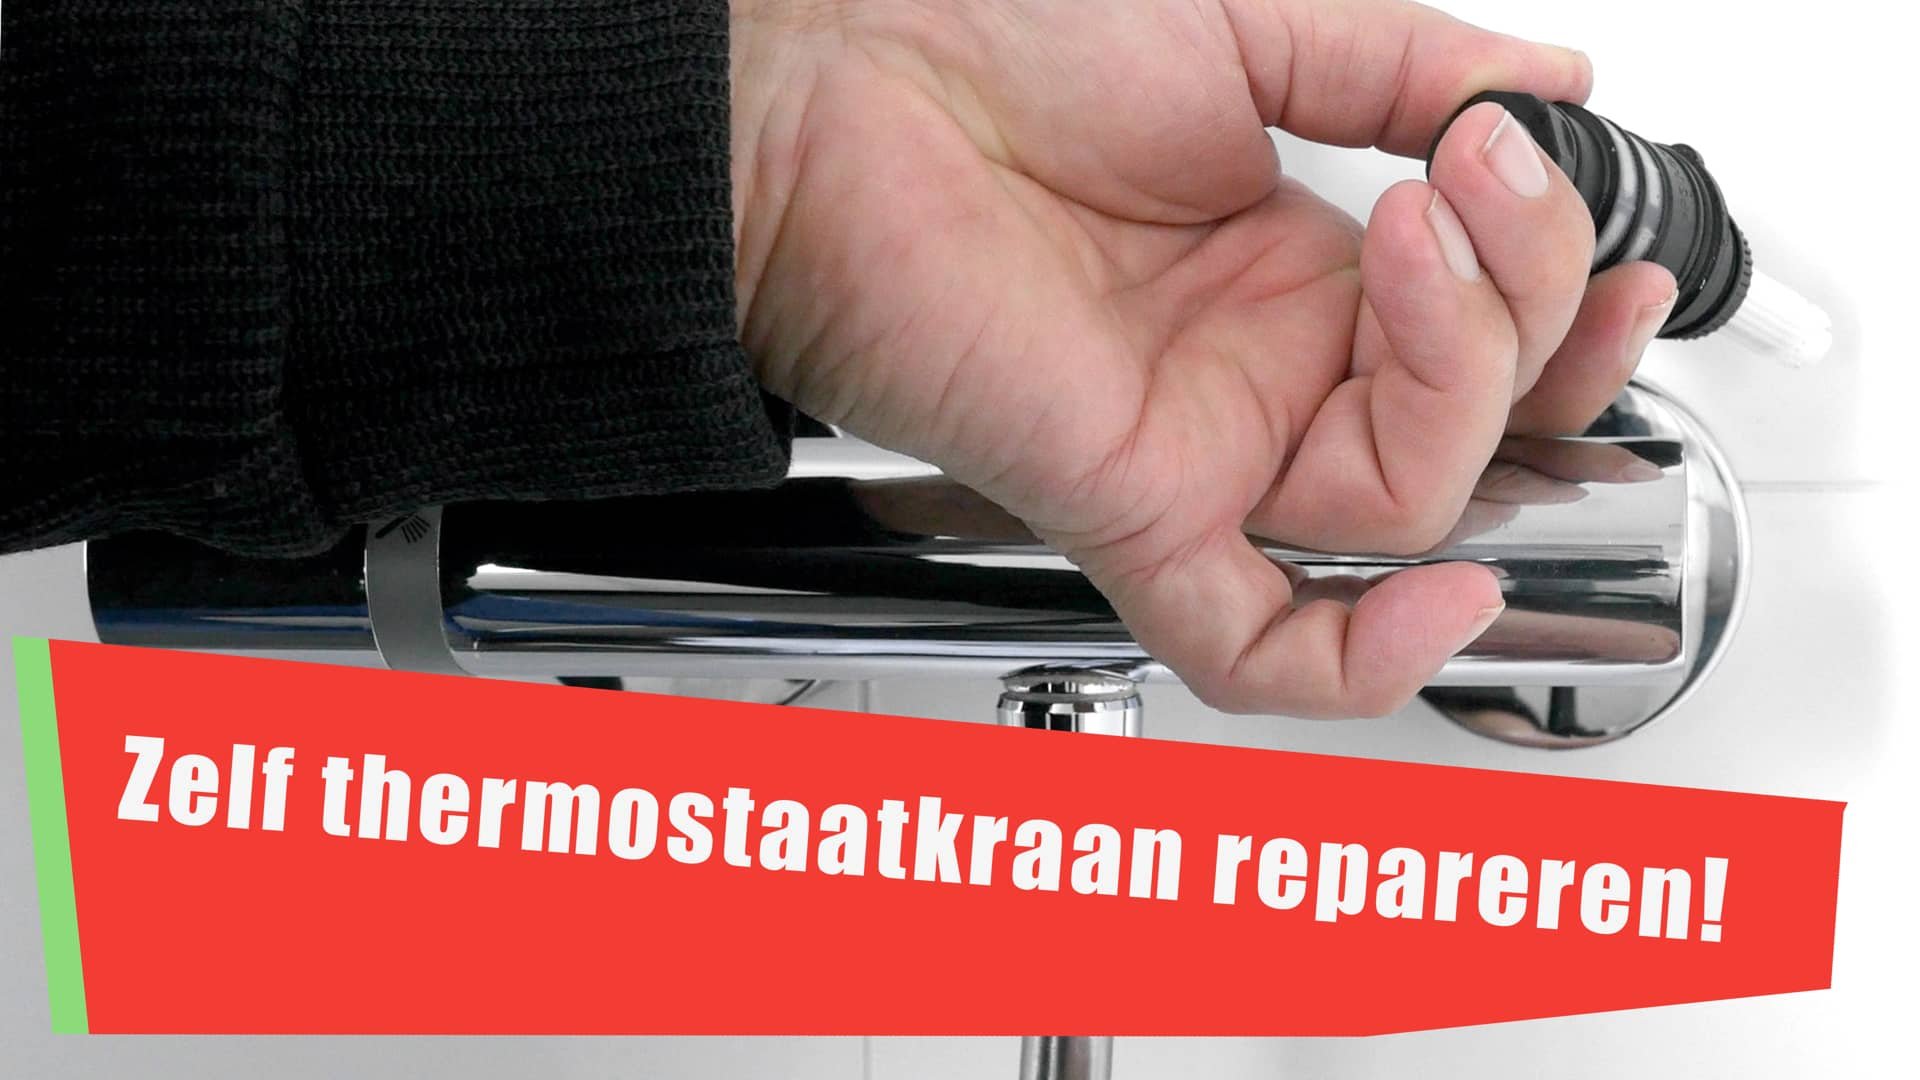 Zelf je thermostaatkraan repareren, kan dat en hoe moet dat?